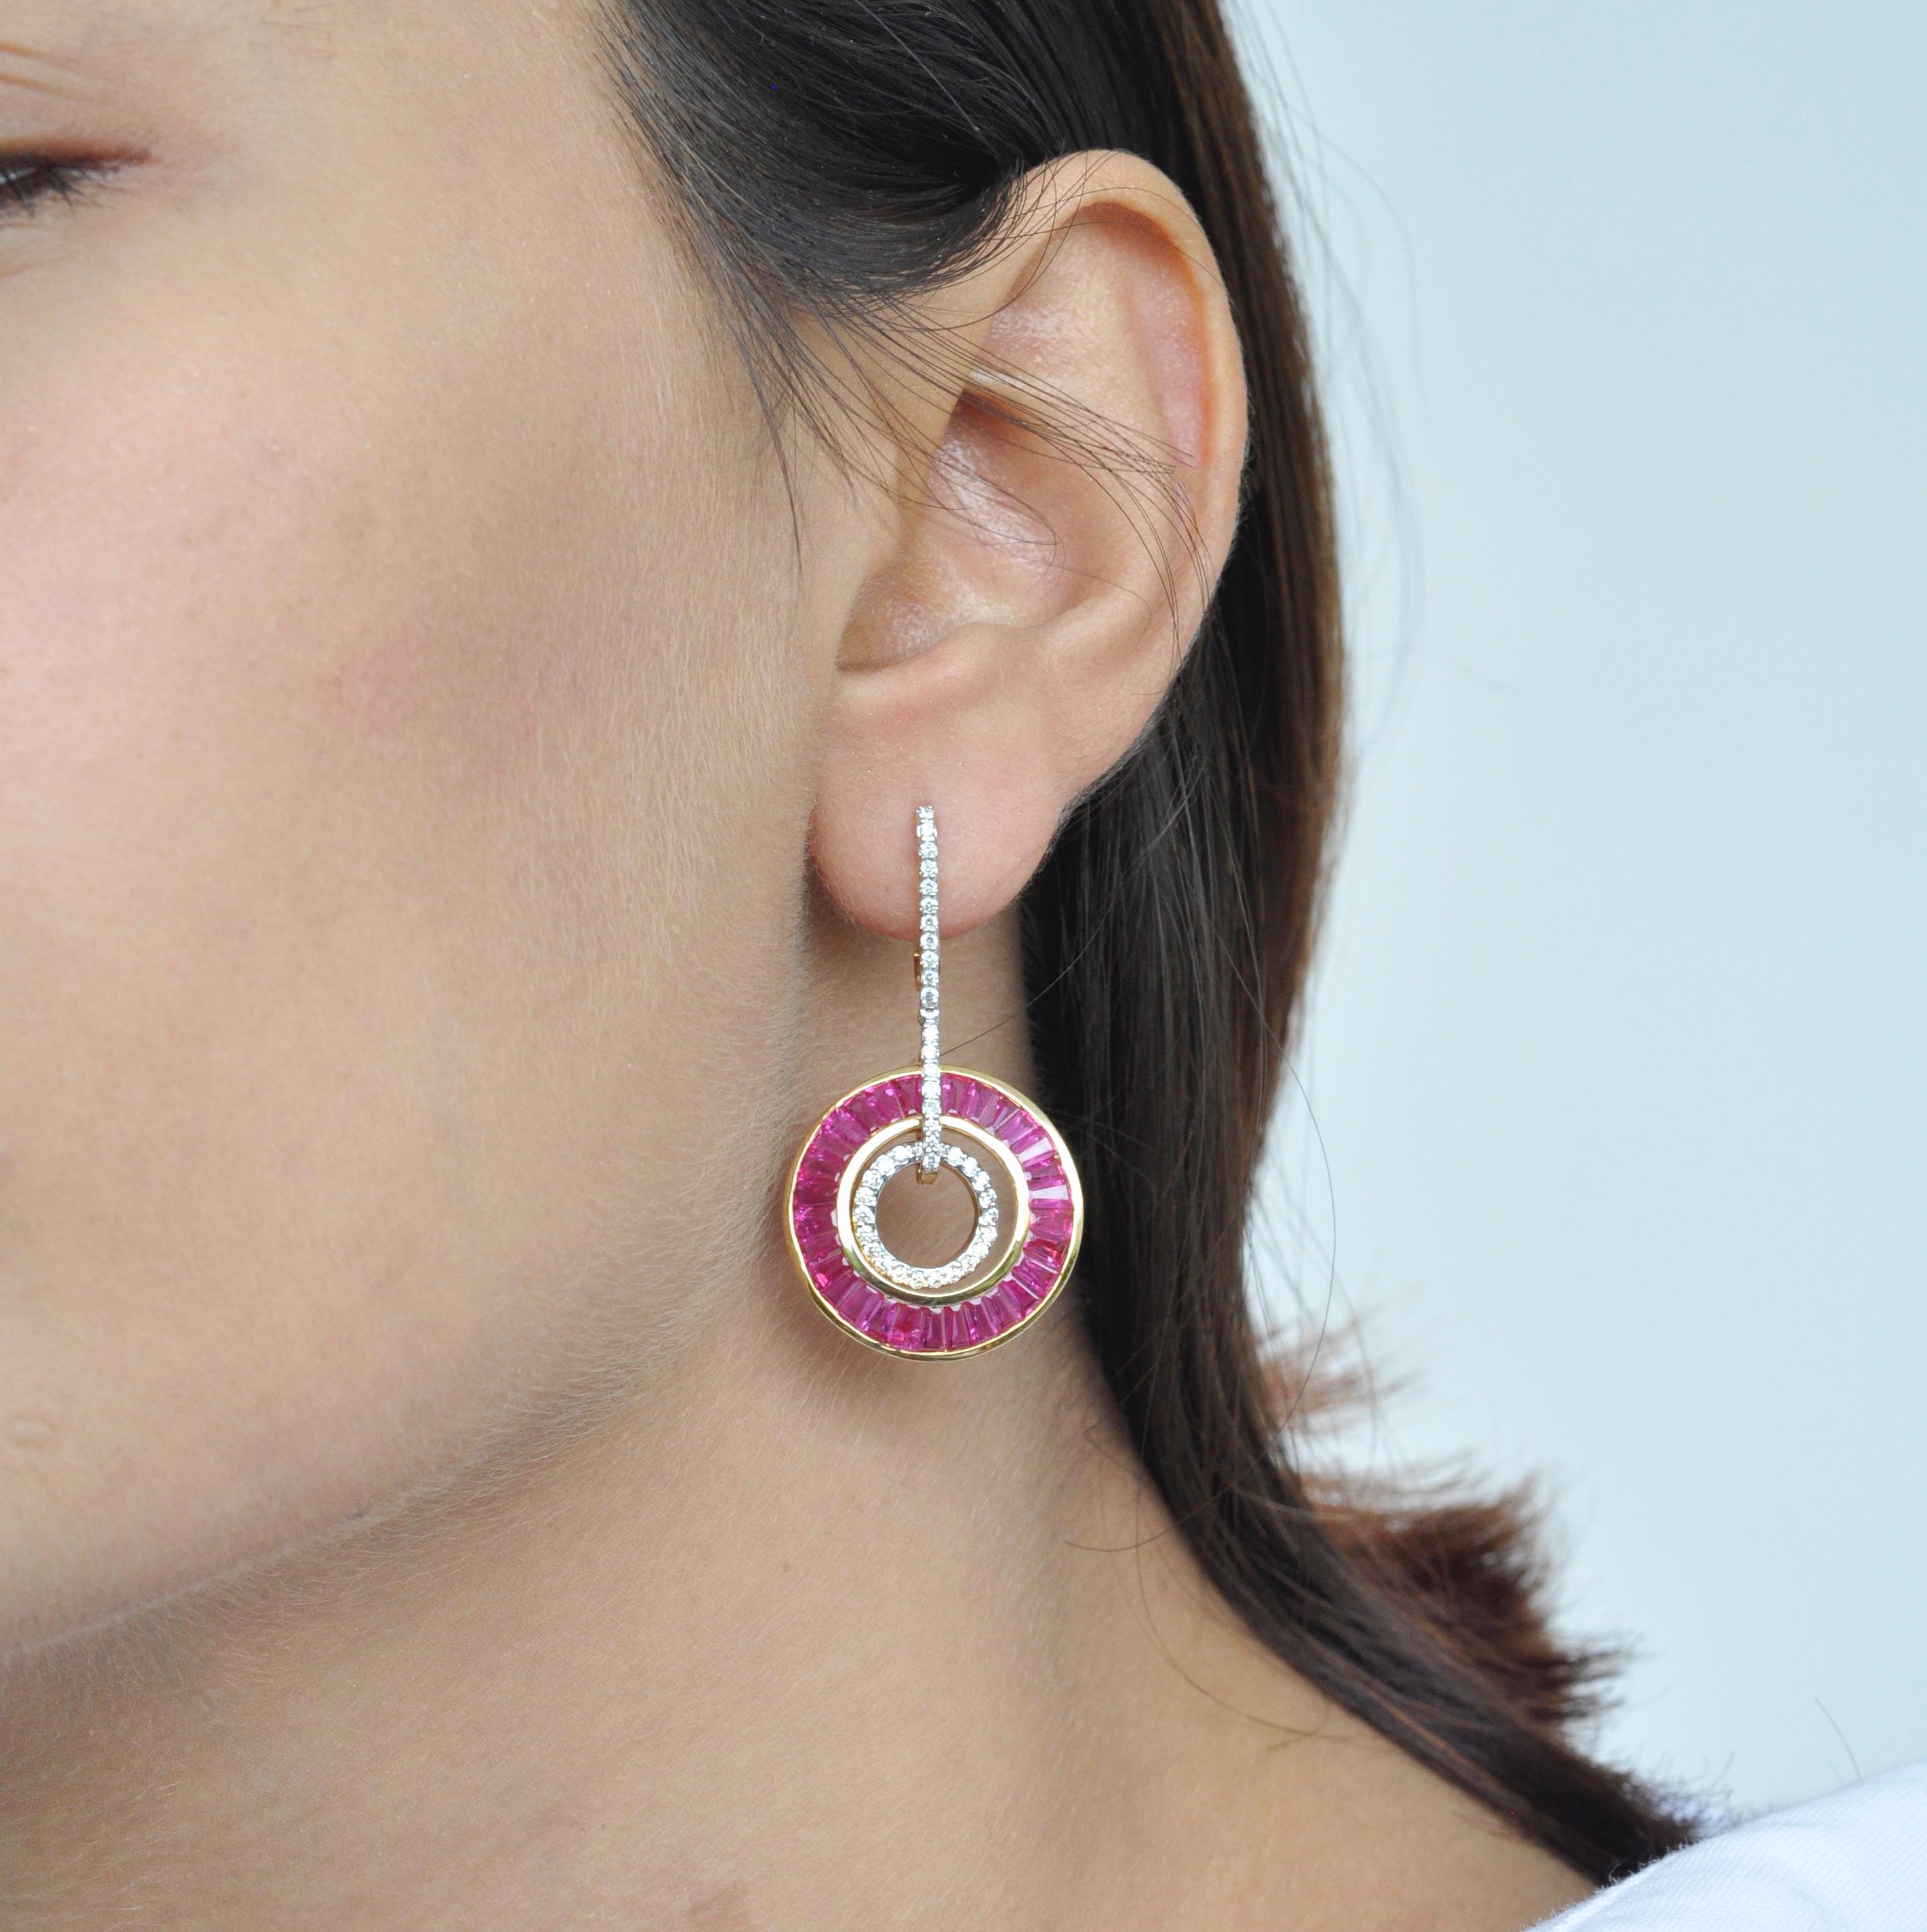 boucles d'oreilles pendantes circulaires en or 18 carats de style art-déco avec rubis, baguettes effilées et diamants.

Cette extraordinaire boucle d'oreille en rubis rouge cramoisi, de style art déco, est fascinante. Une sélection méticuleuse de 60